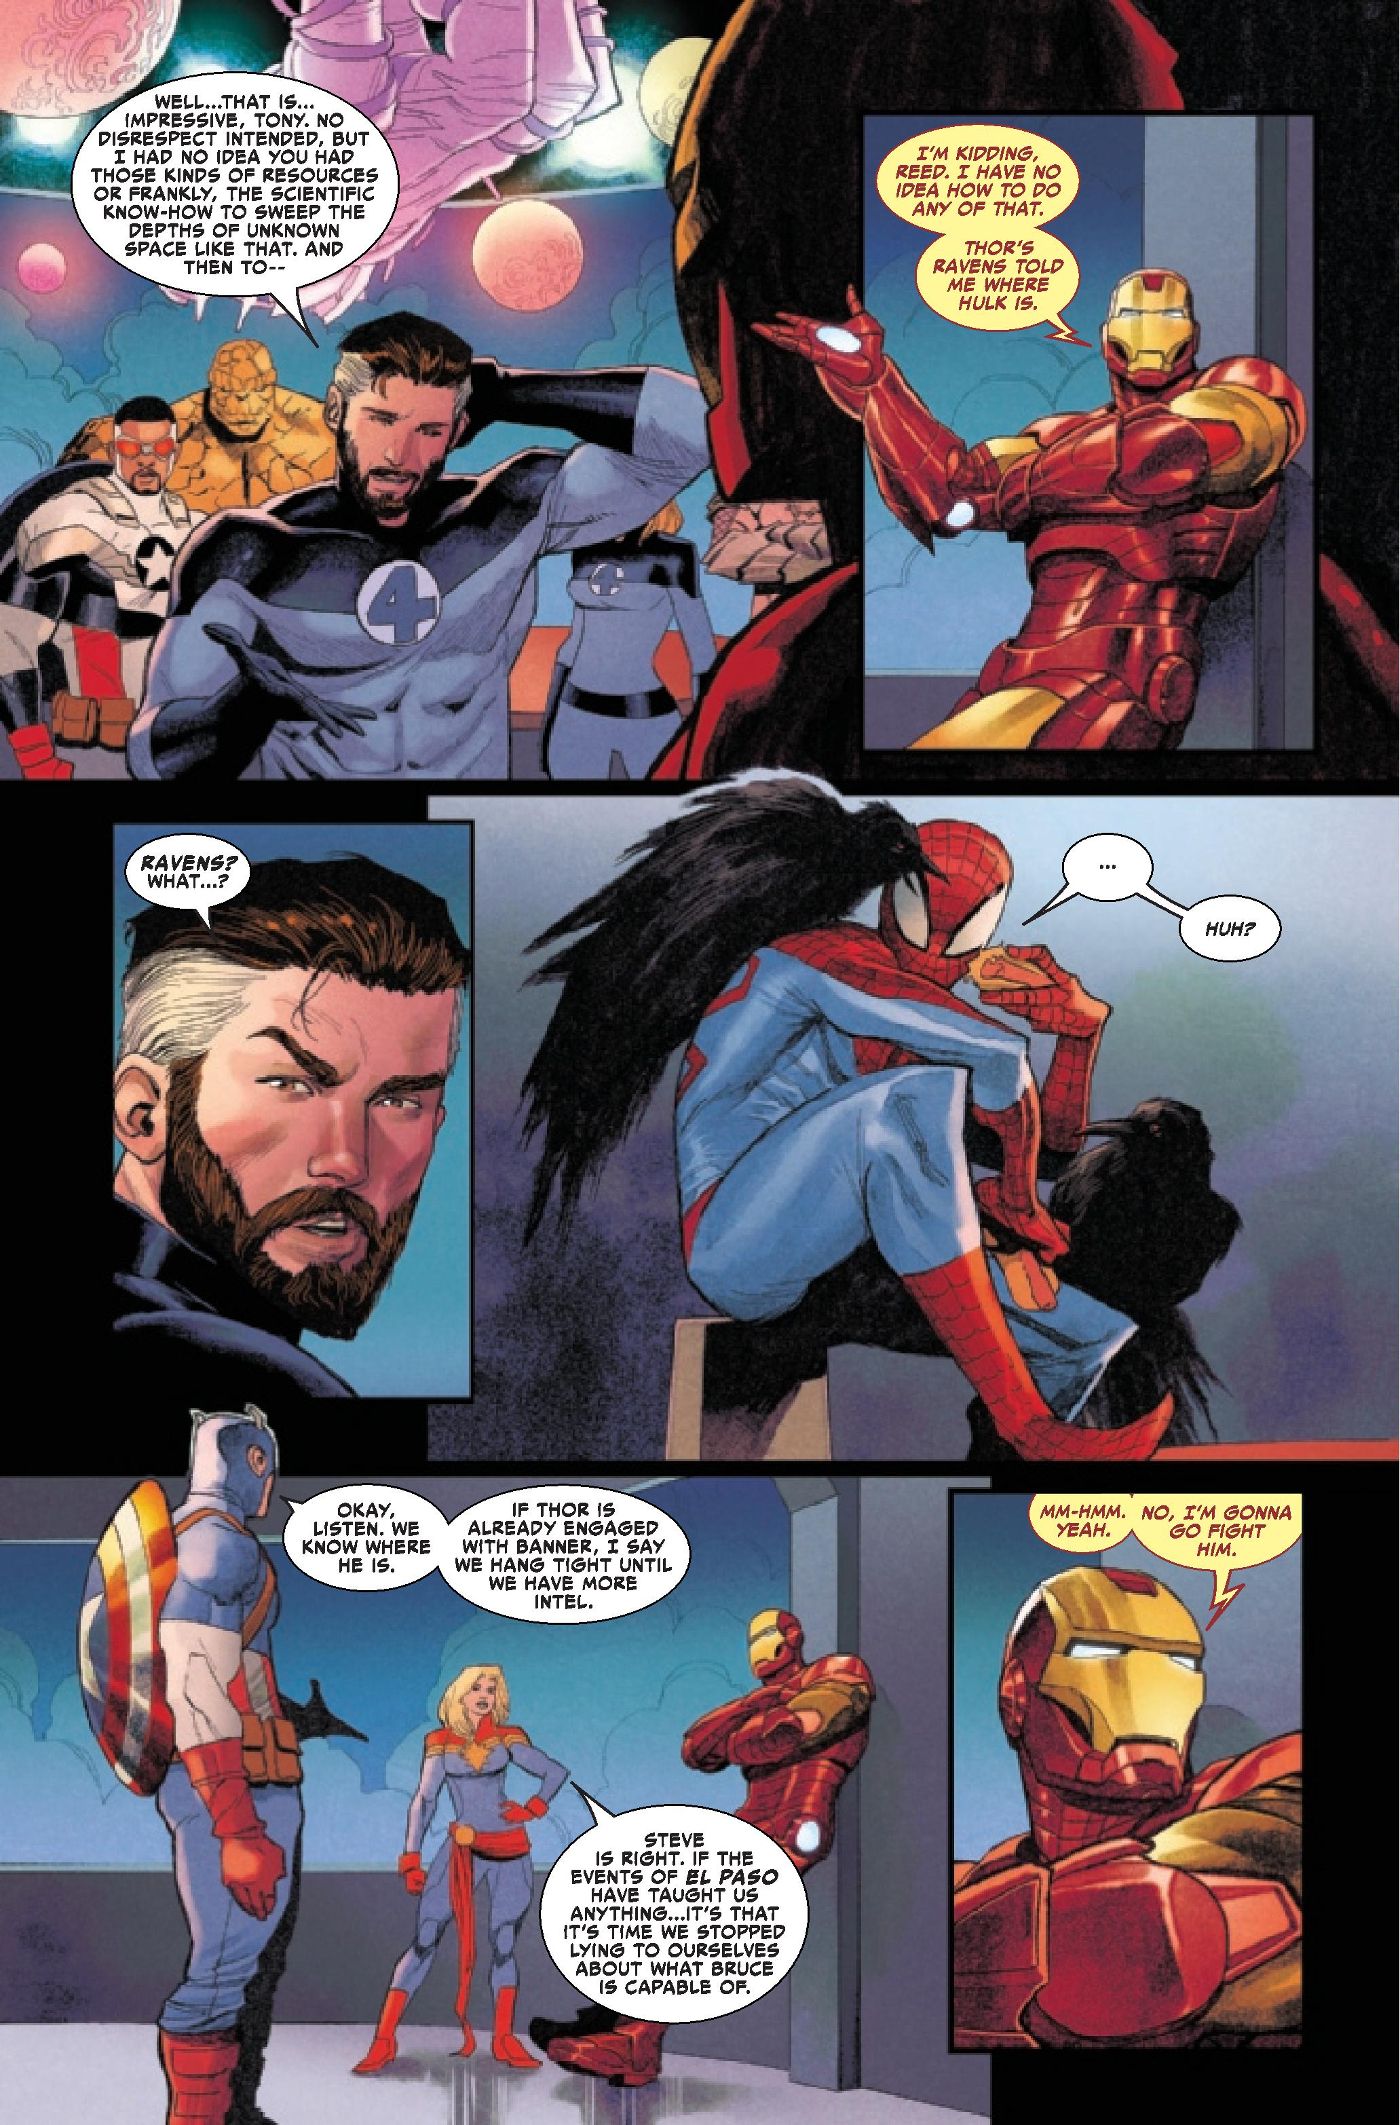 Thor 25 Iron Man making fun of Mr. Fantastic